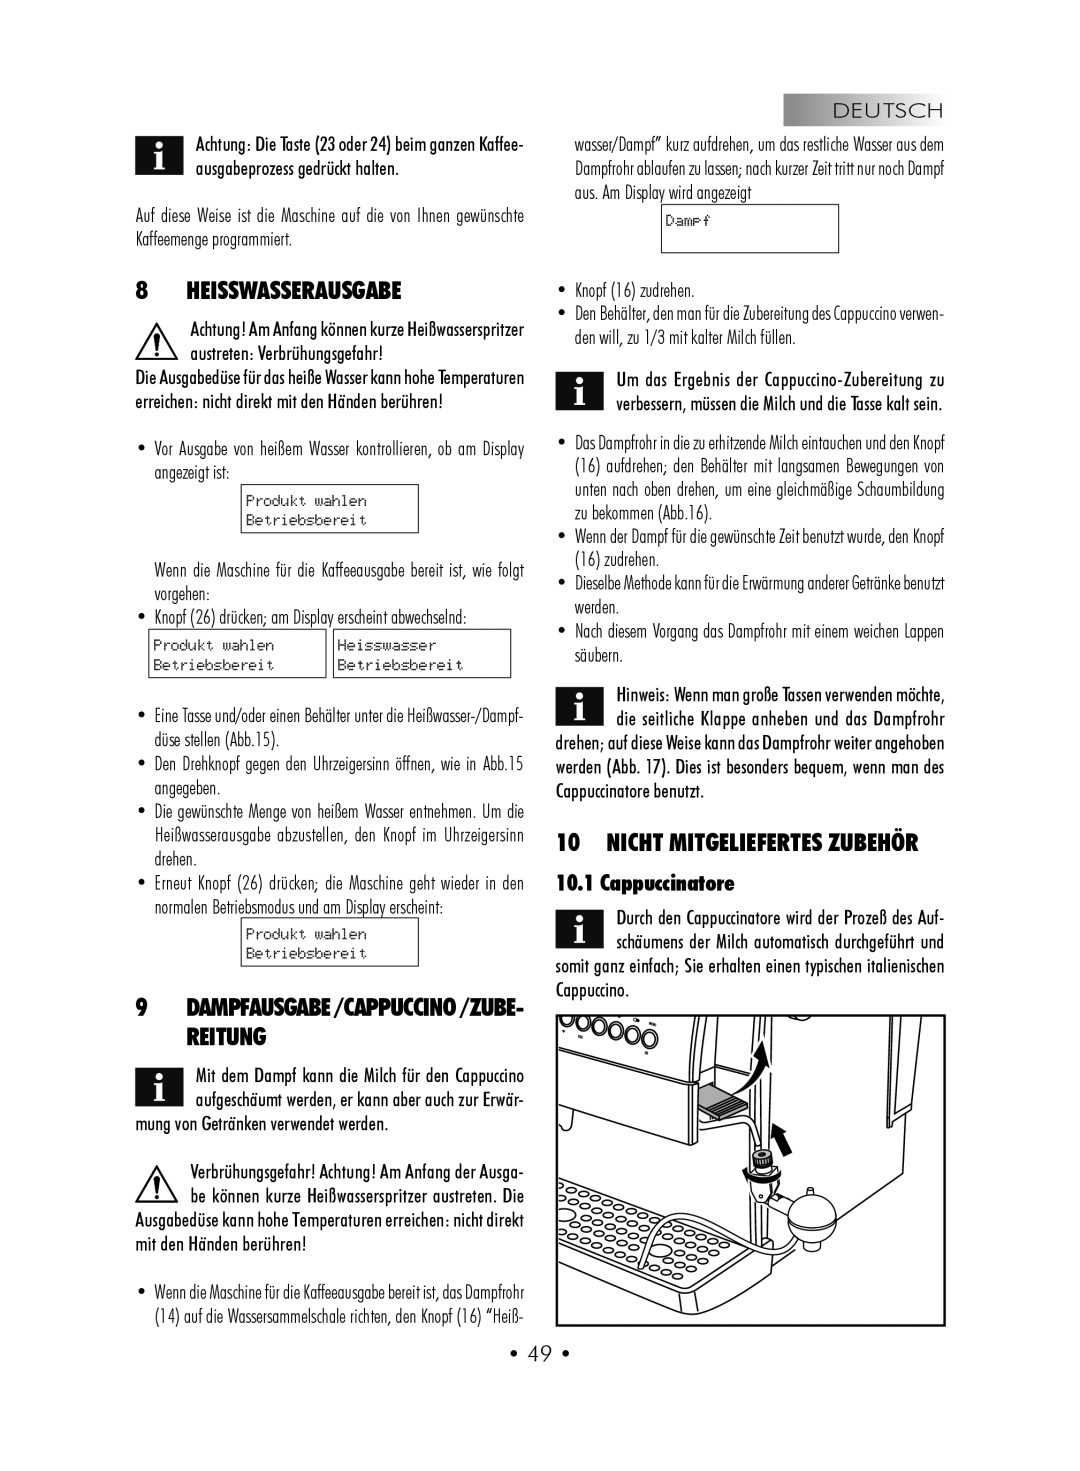 Gaggia SUP027YDR manual Heisswasserausgabe, Nicht mitgeliefertes Zubehör, Cappuccinatore, • 49 • 